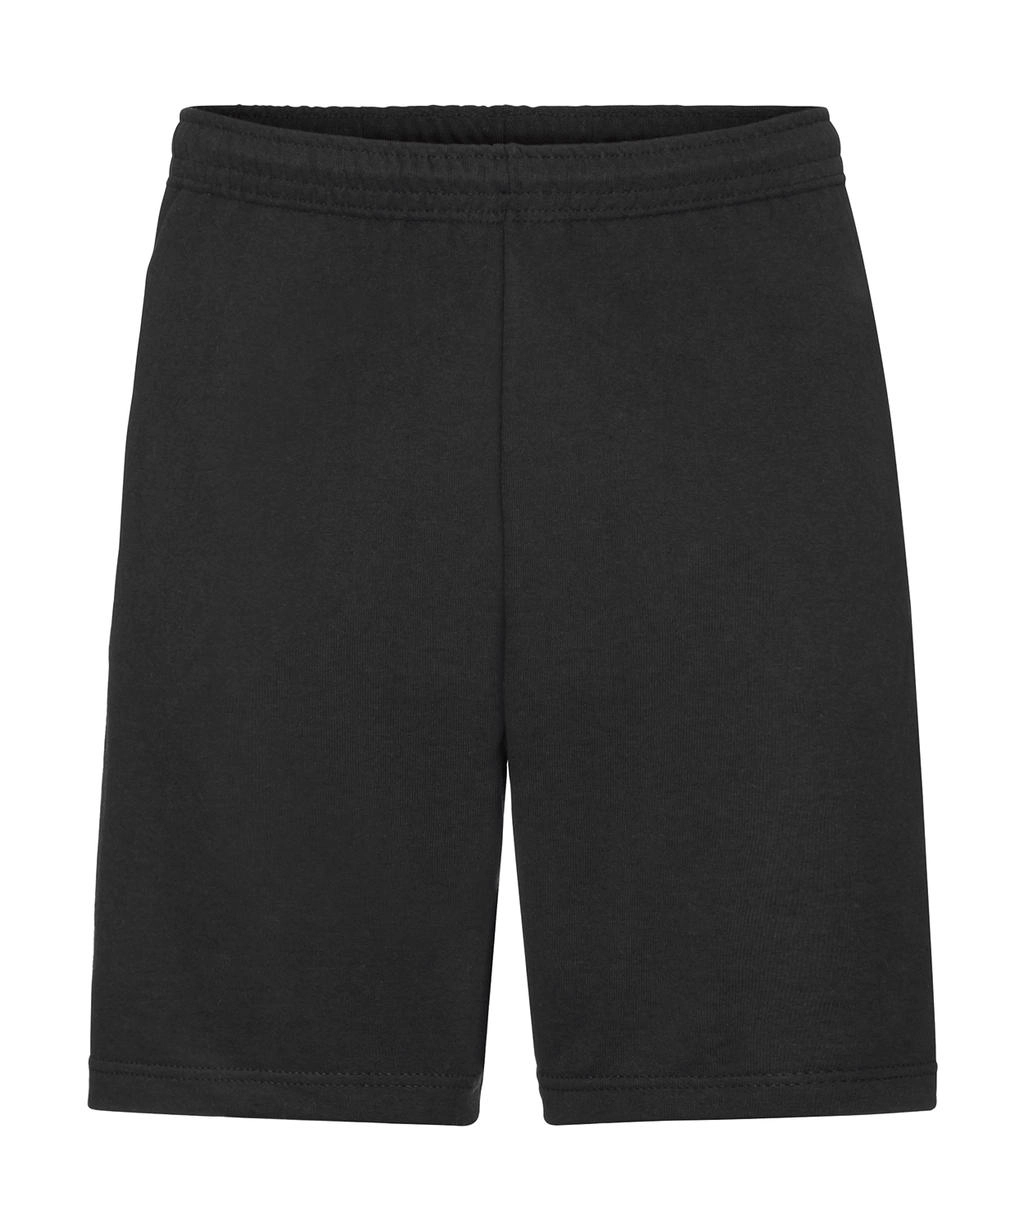 Lightweight Shorts zum Besticken und Bedrucken in der Farbe Black mit Ihren Logo, Schriftzug oder Motiv.